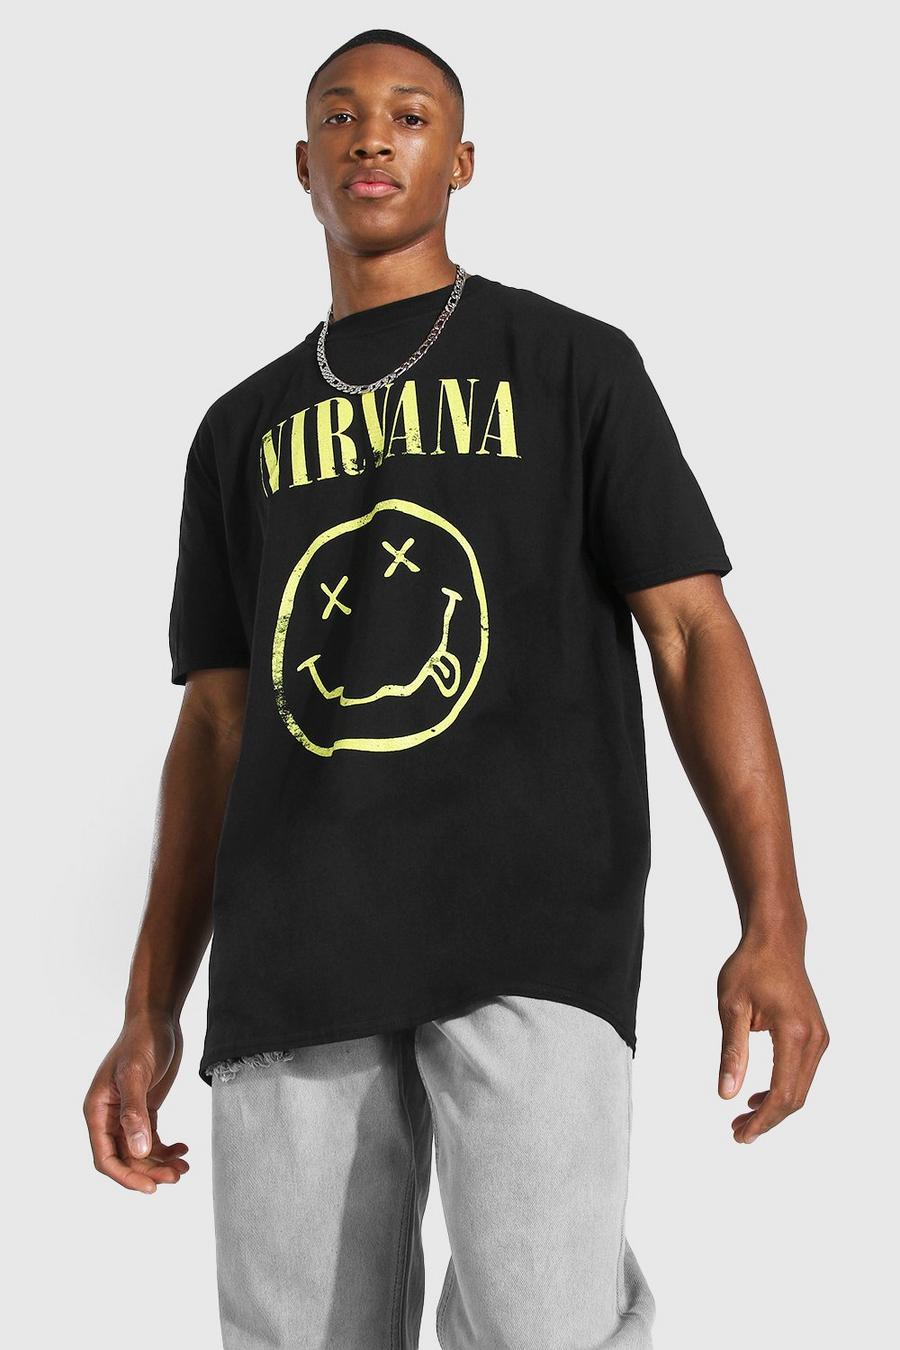 Black noir Oversized Nirvana License T-shirt